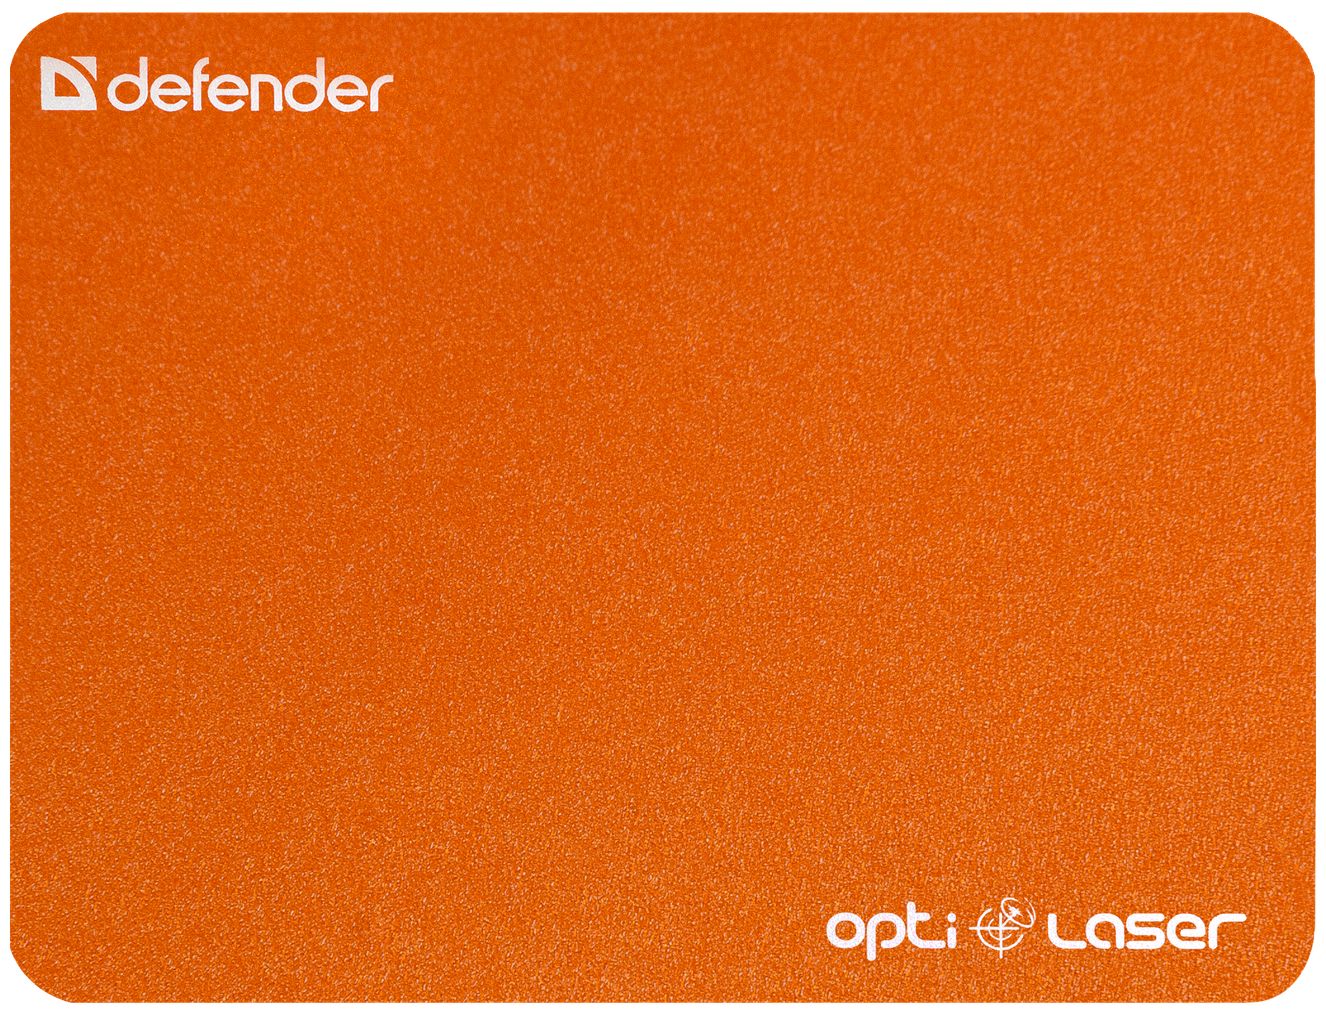 Defender Silver Laser 50410 defender oversider gm 917 rgb